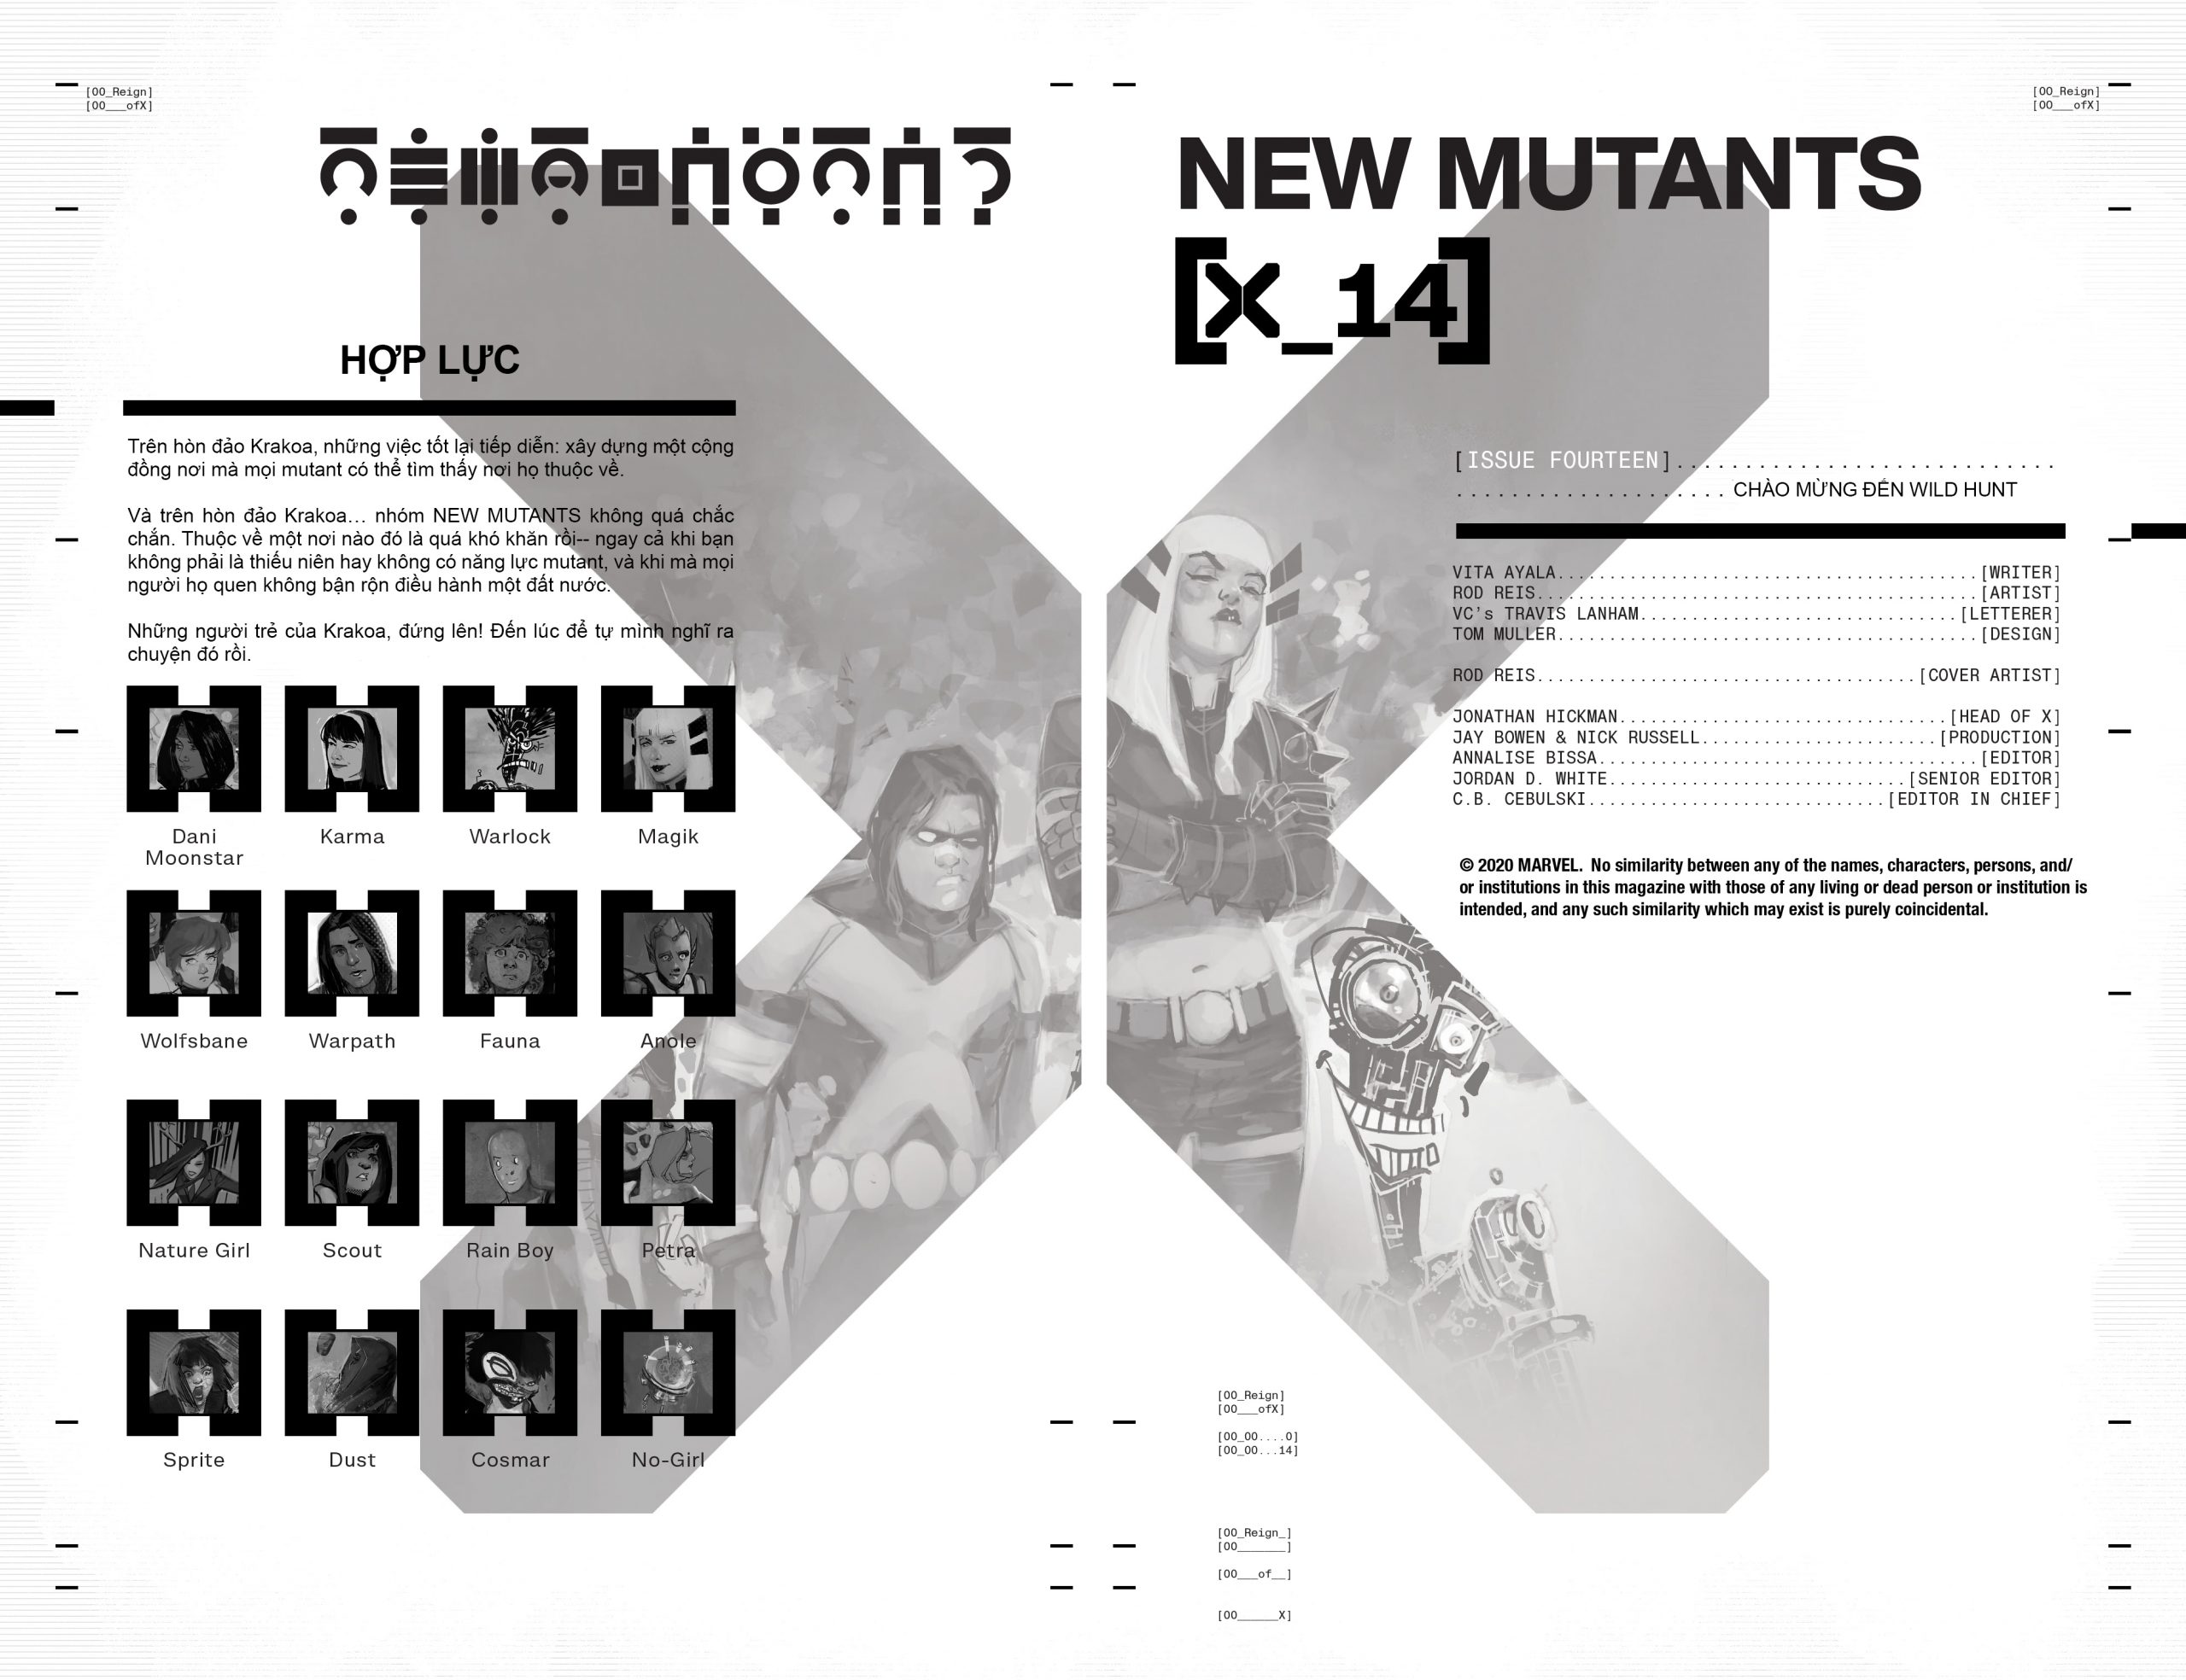 https://langgeek.net/wp-content/uploads/2022/01/New-Mutants-014-004-scaled.jpg